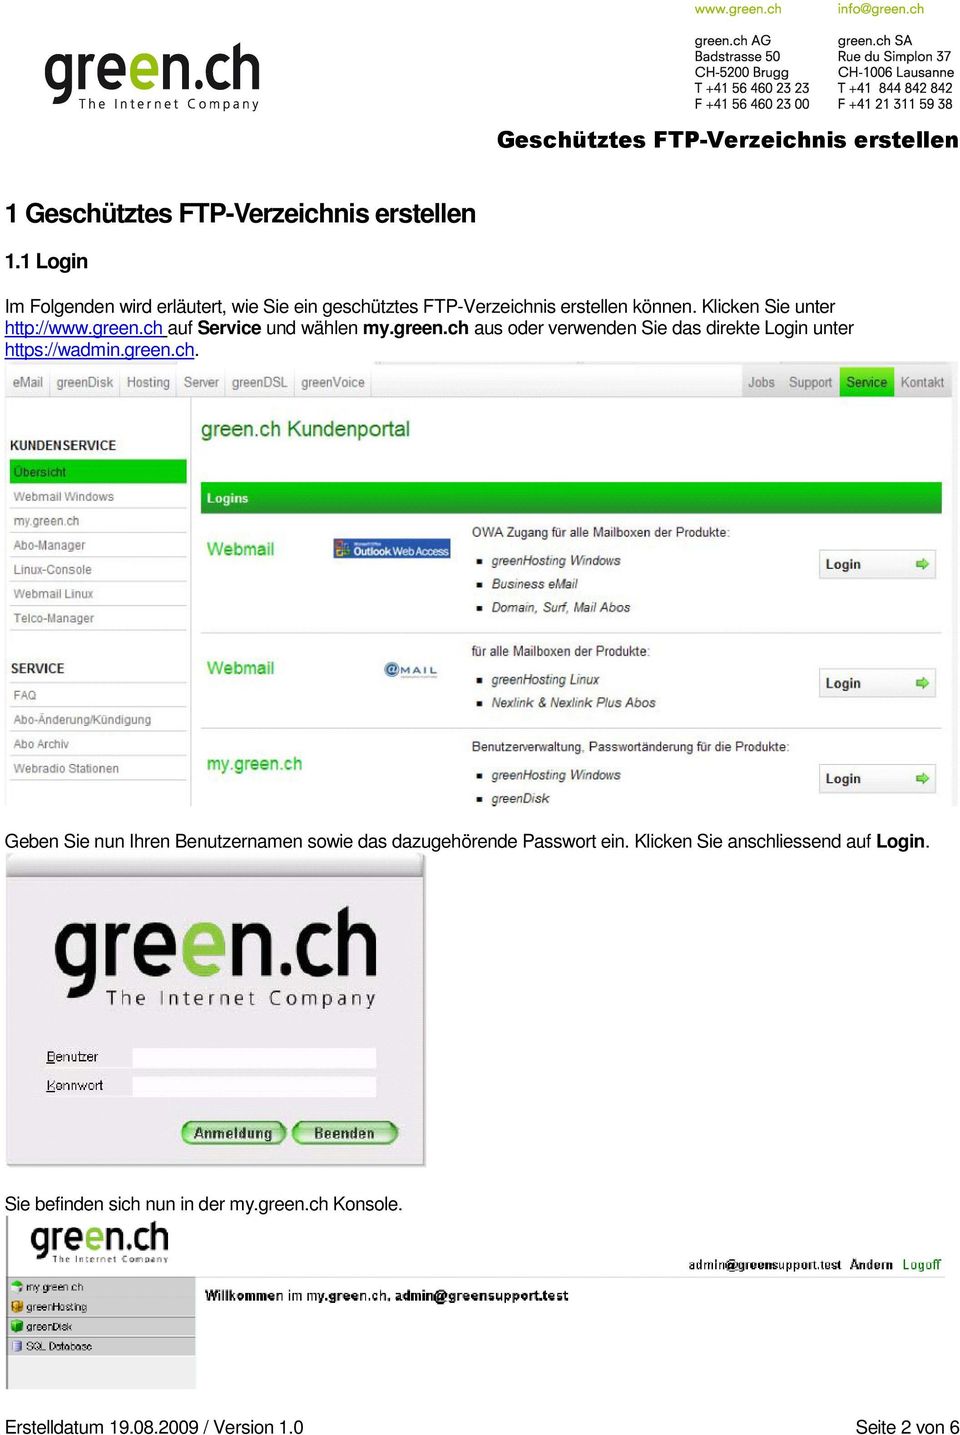 Klicken Sie unter http://www.green.ch auf Service und wählen my.green.ch aus oder verwenden Sie das direkte Login unter https://wadmin.